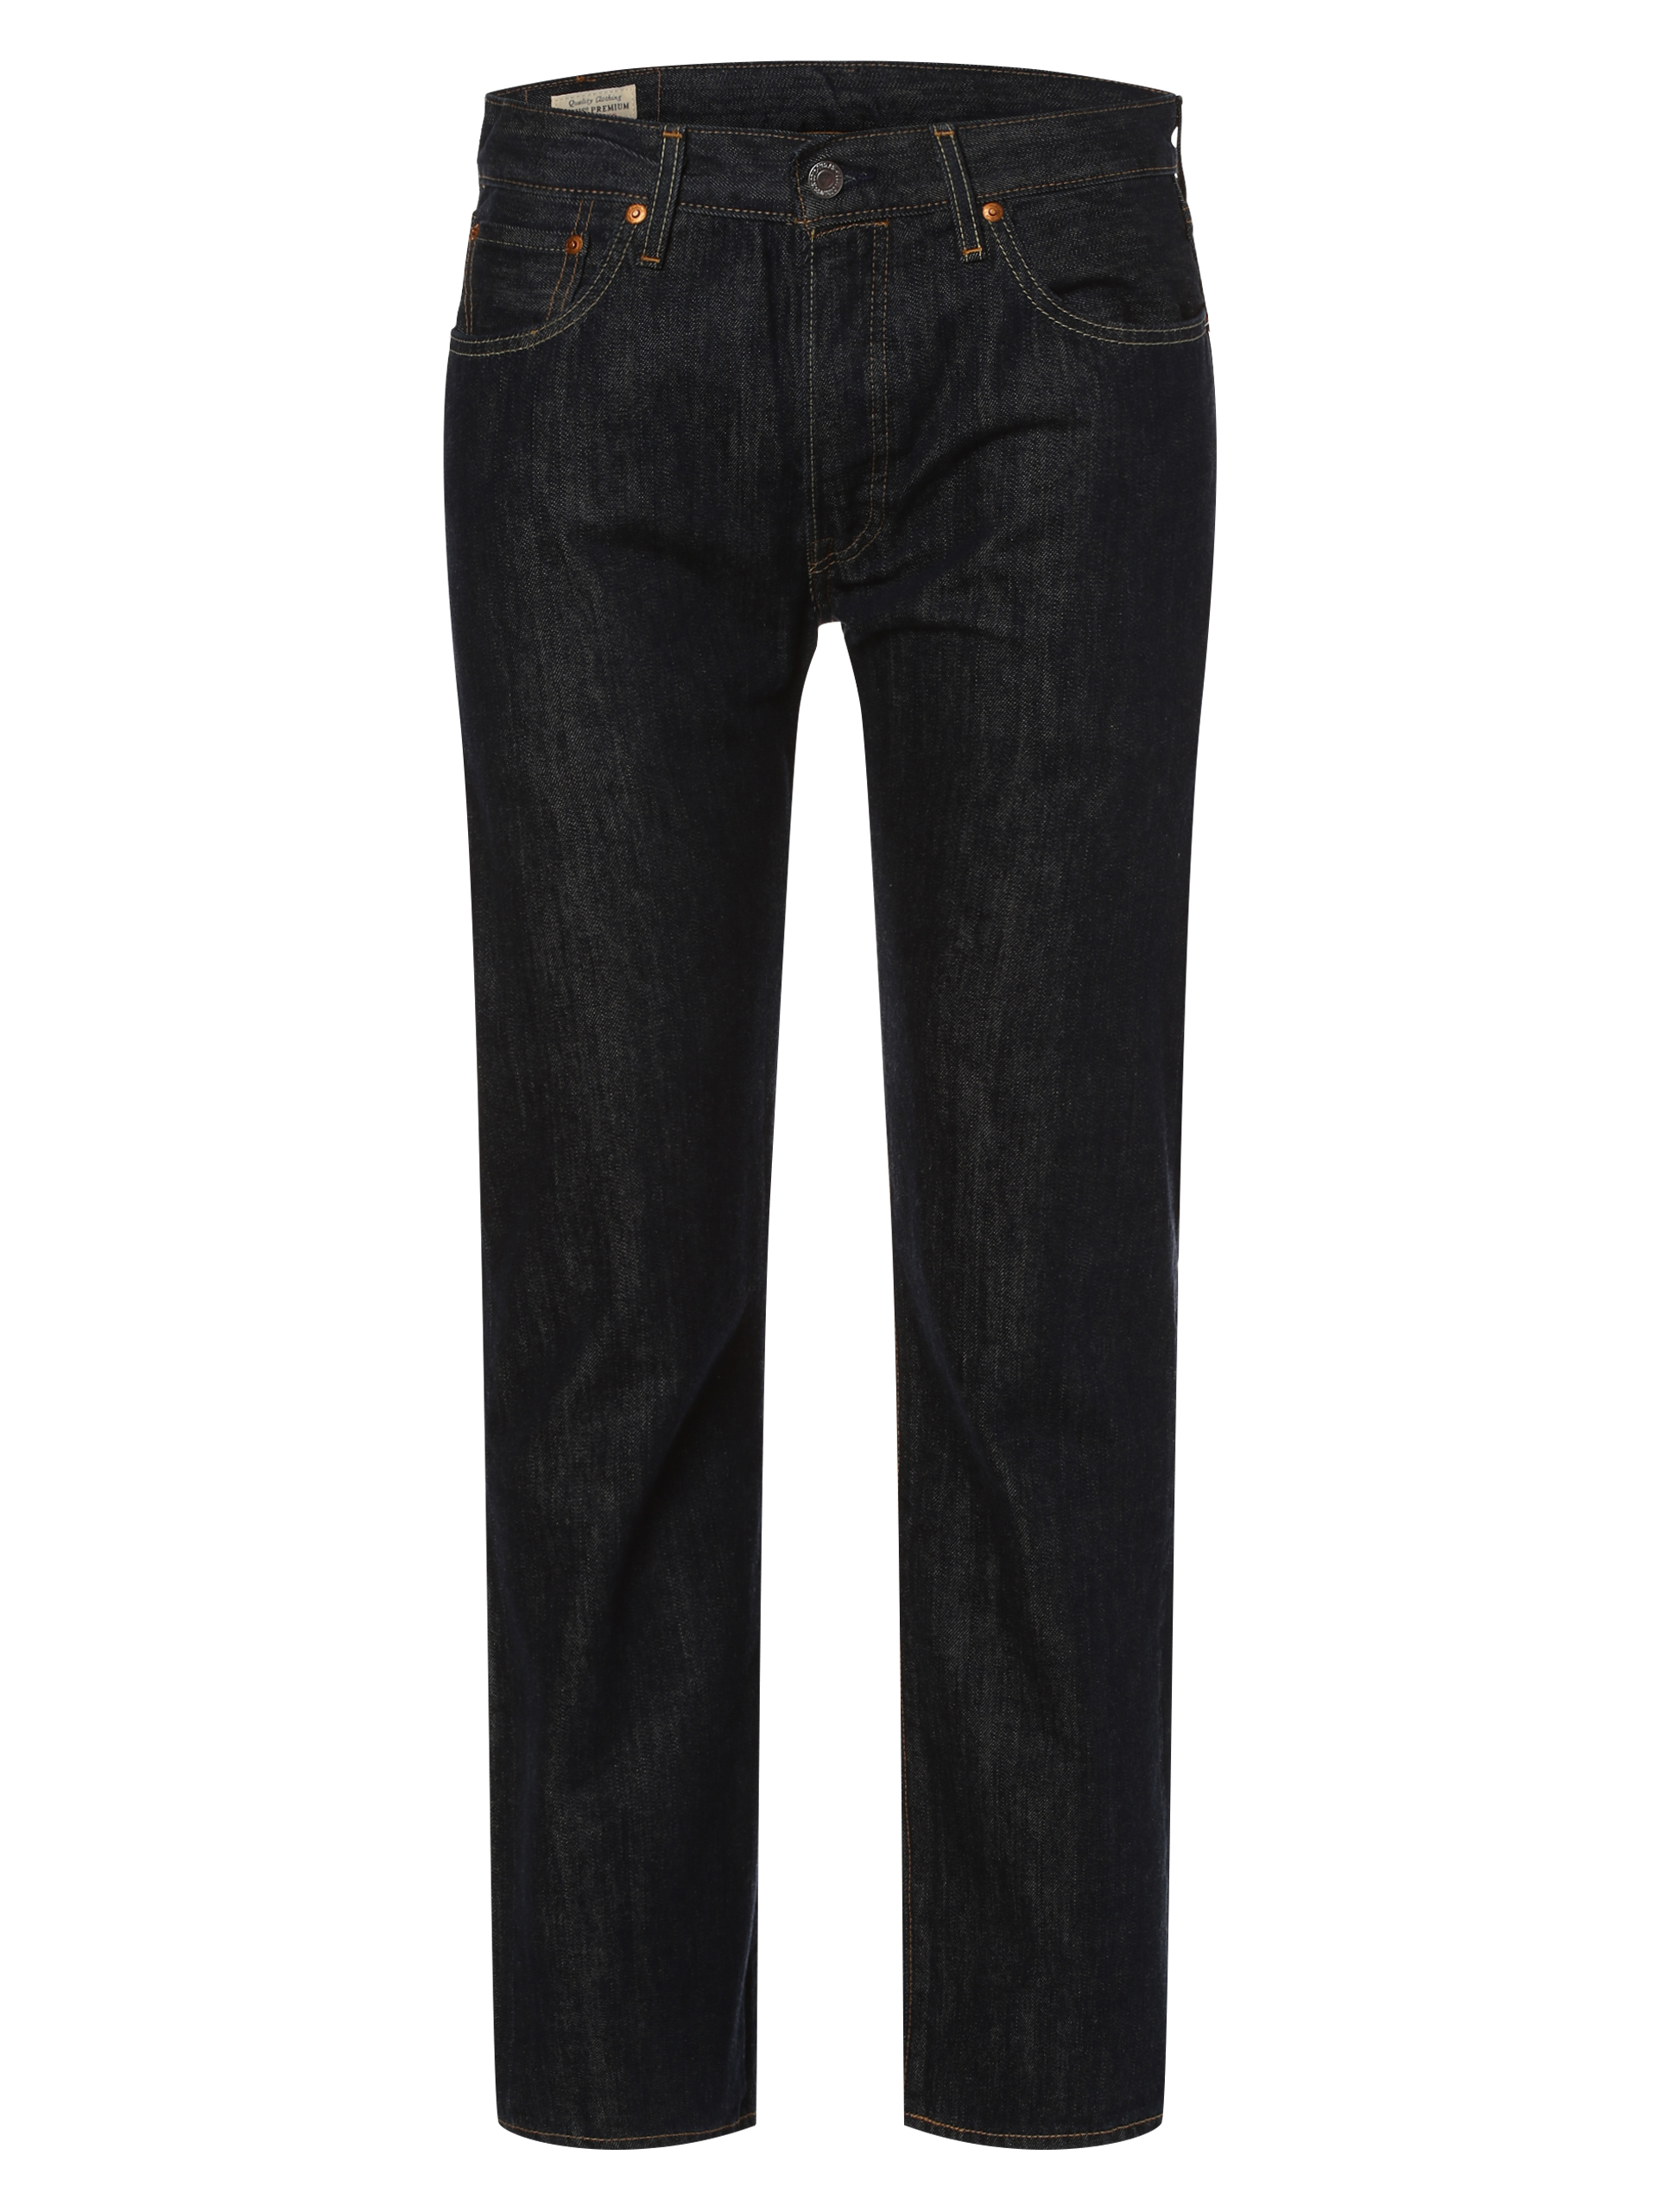 Джинсы Levi´s 501, цвет rinsed джинсы расклешенные paris cambio цвет rinsed